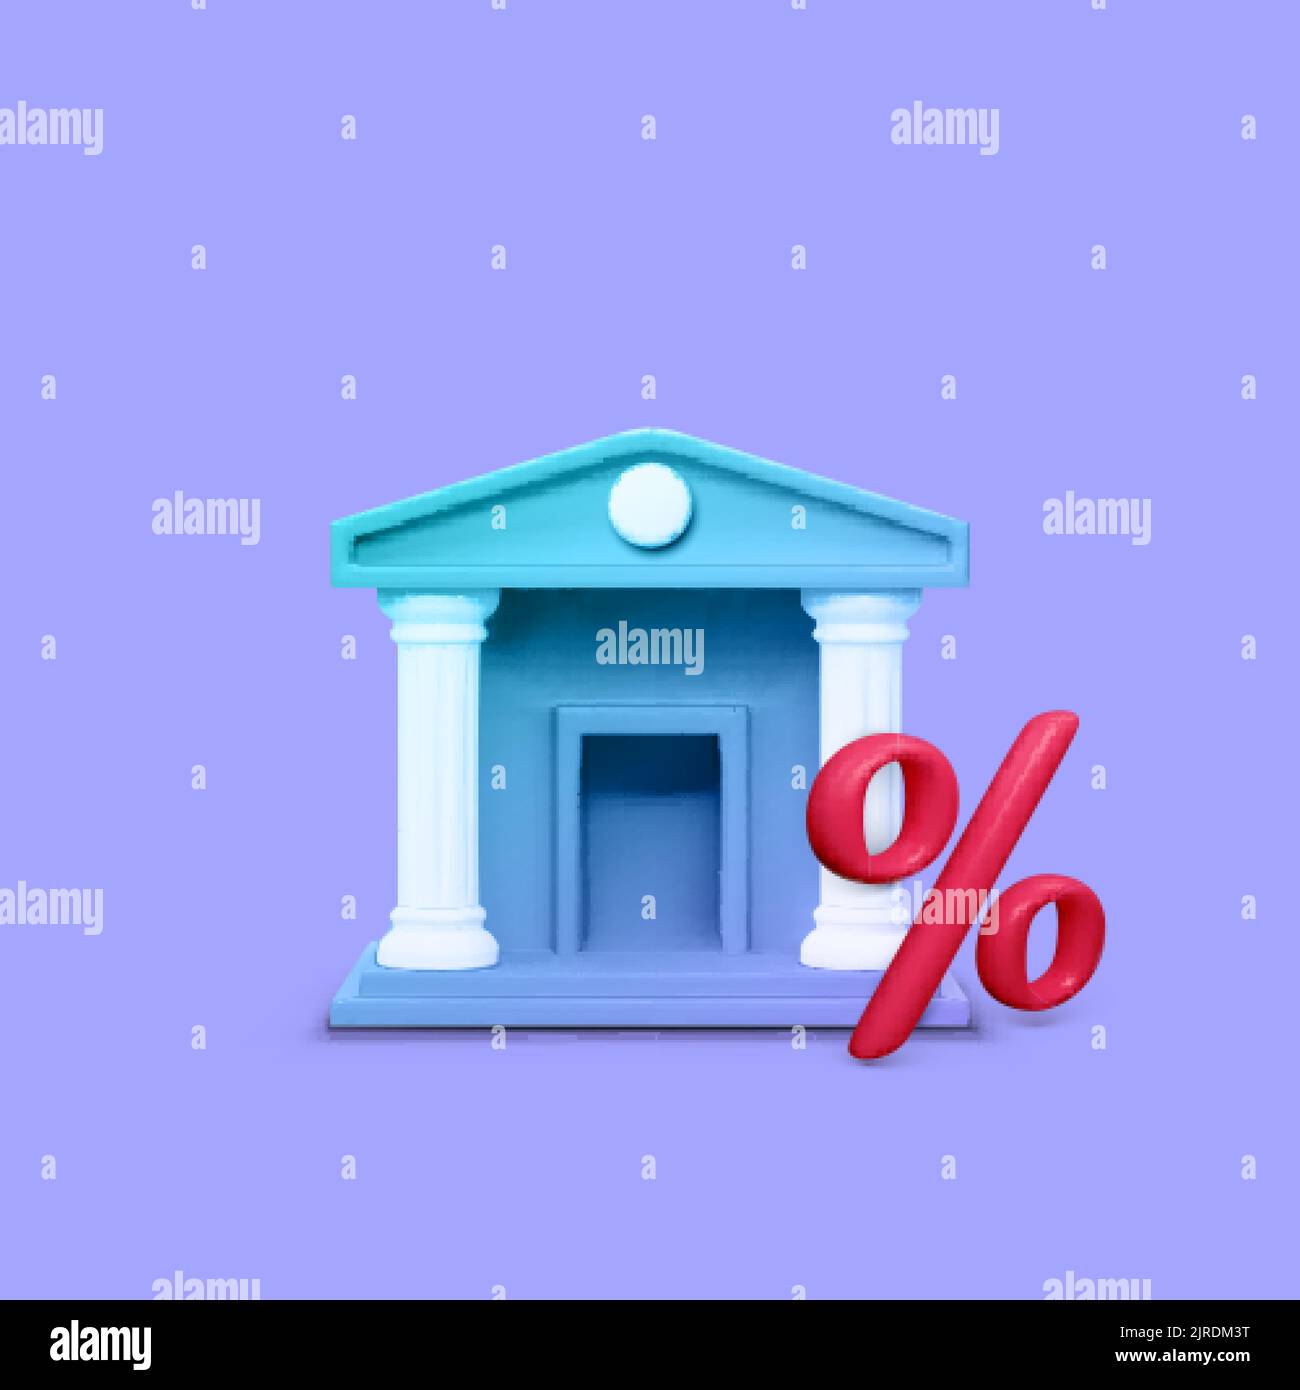 3D Bankgebäude in violetter Farbe und rotem Prozentsymbol. Zinssatz für Bankeinzahlungen. Vektorgrafik Stock Vektor